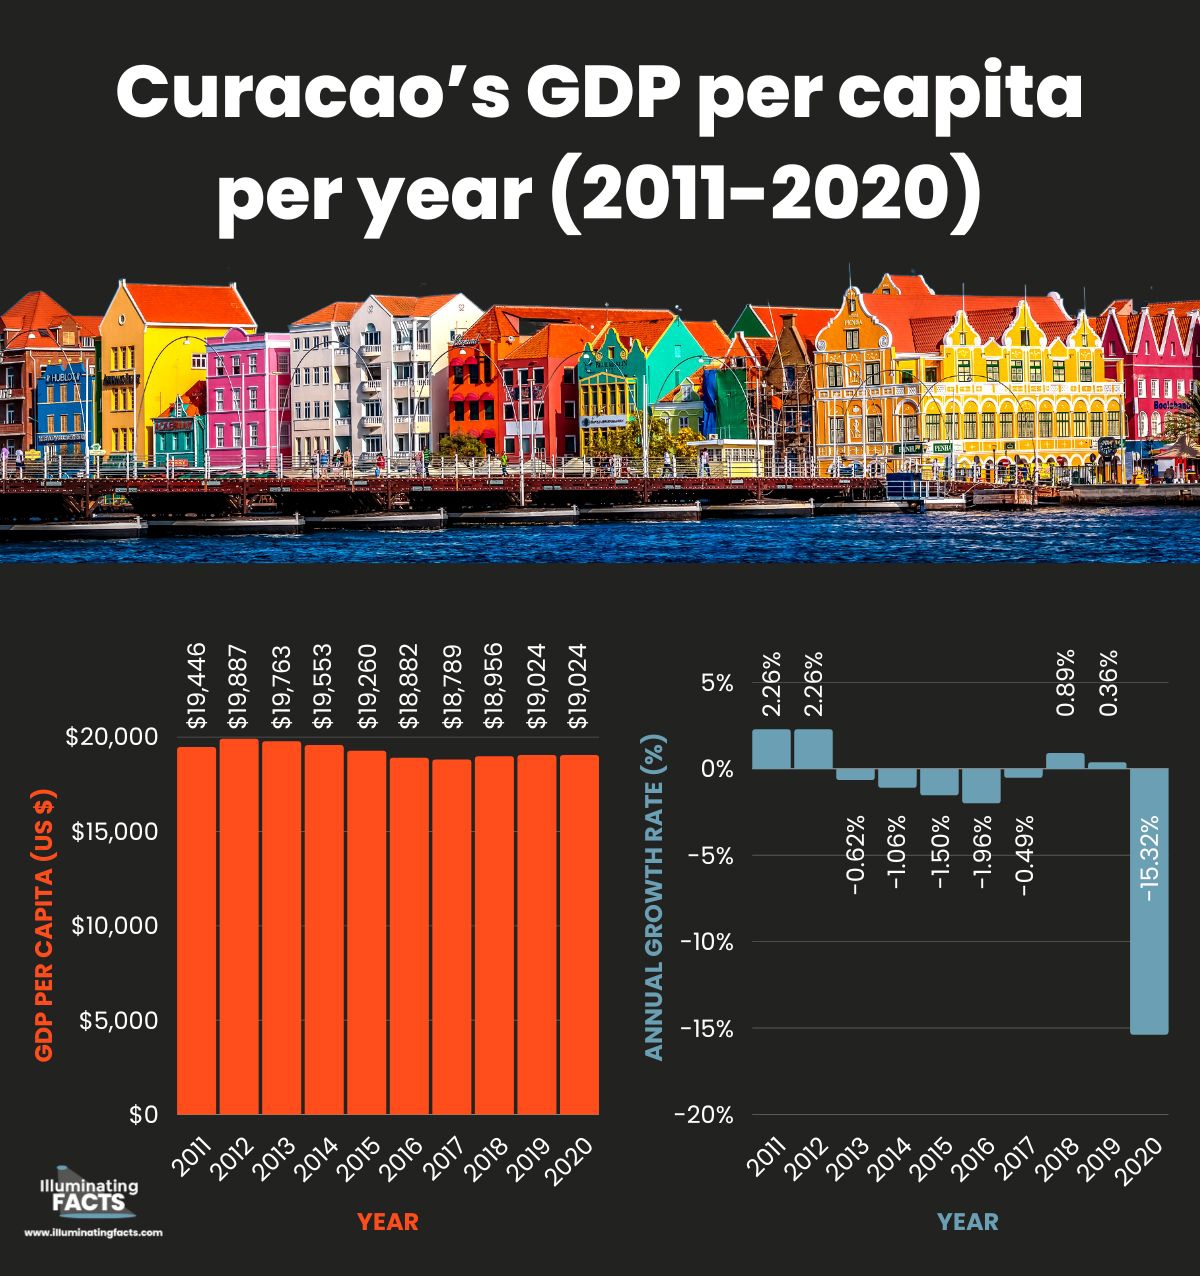 Curacao’s GDP per capita per year (2011-2020)